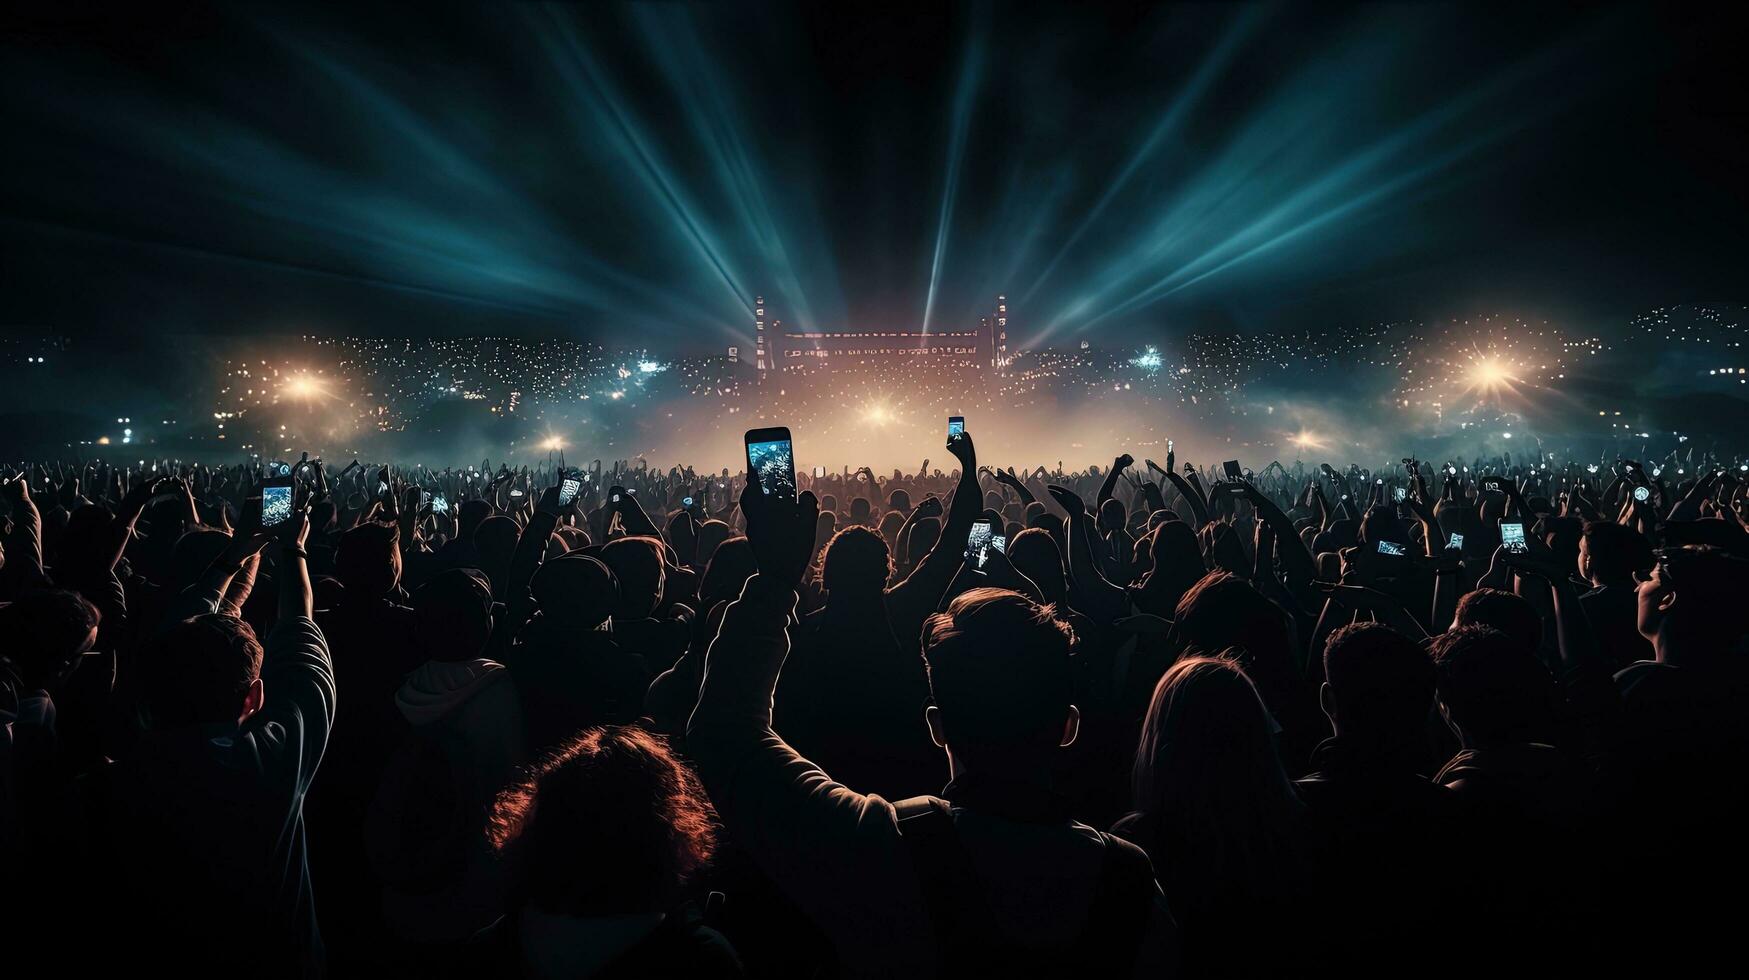 massif foule à la musique Festival enregistrement concert sur téléphones intelligents. silhouette concept photo